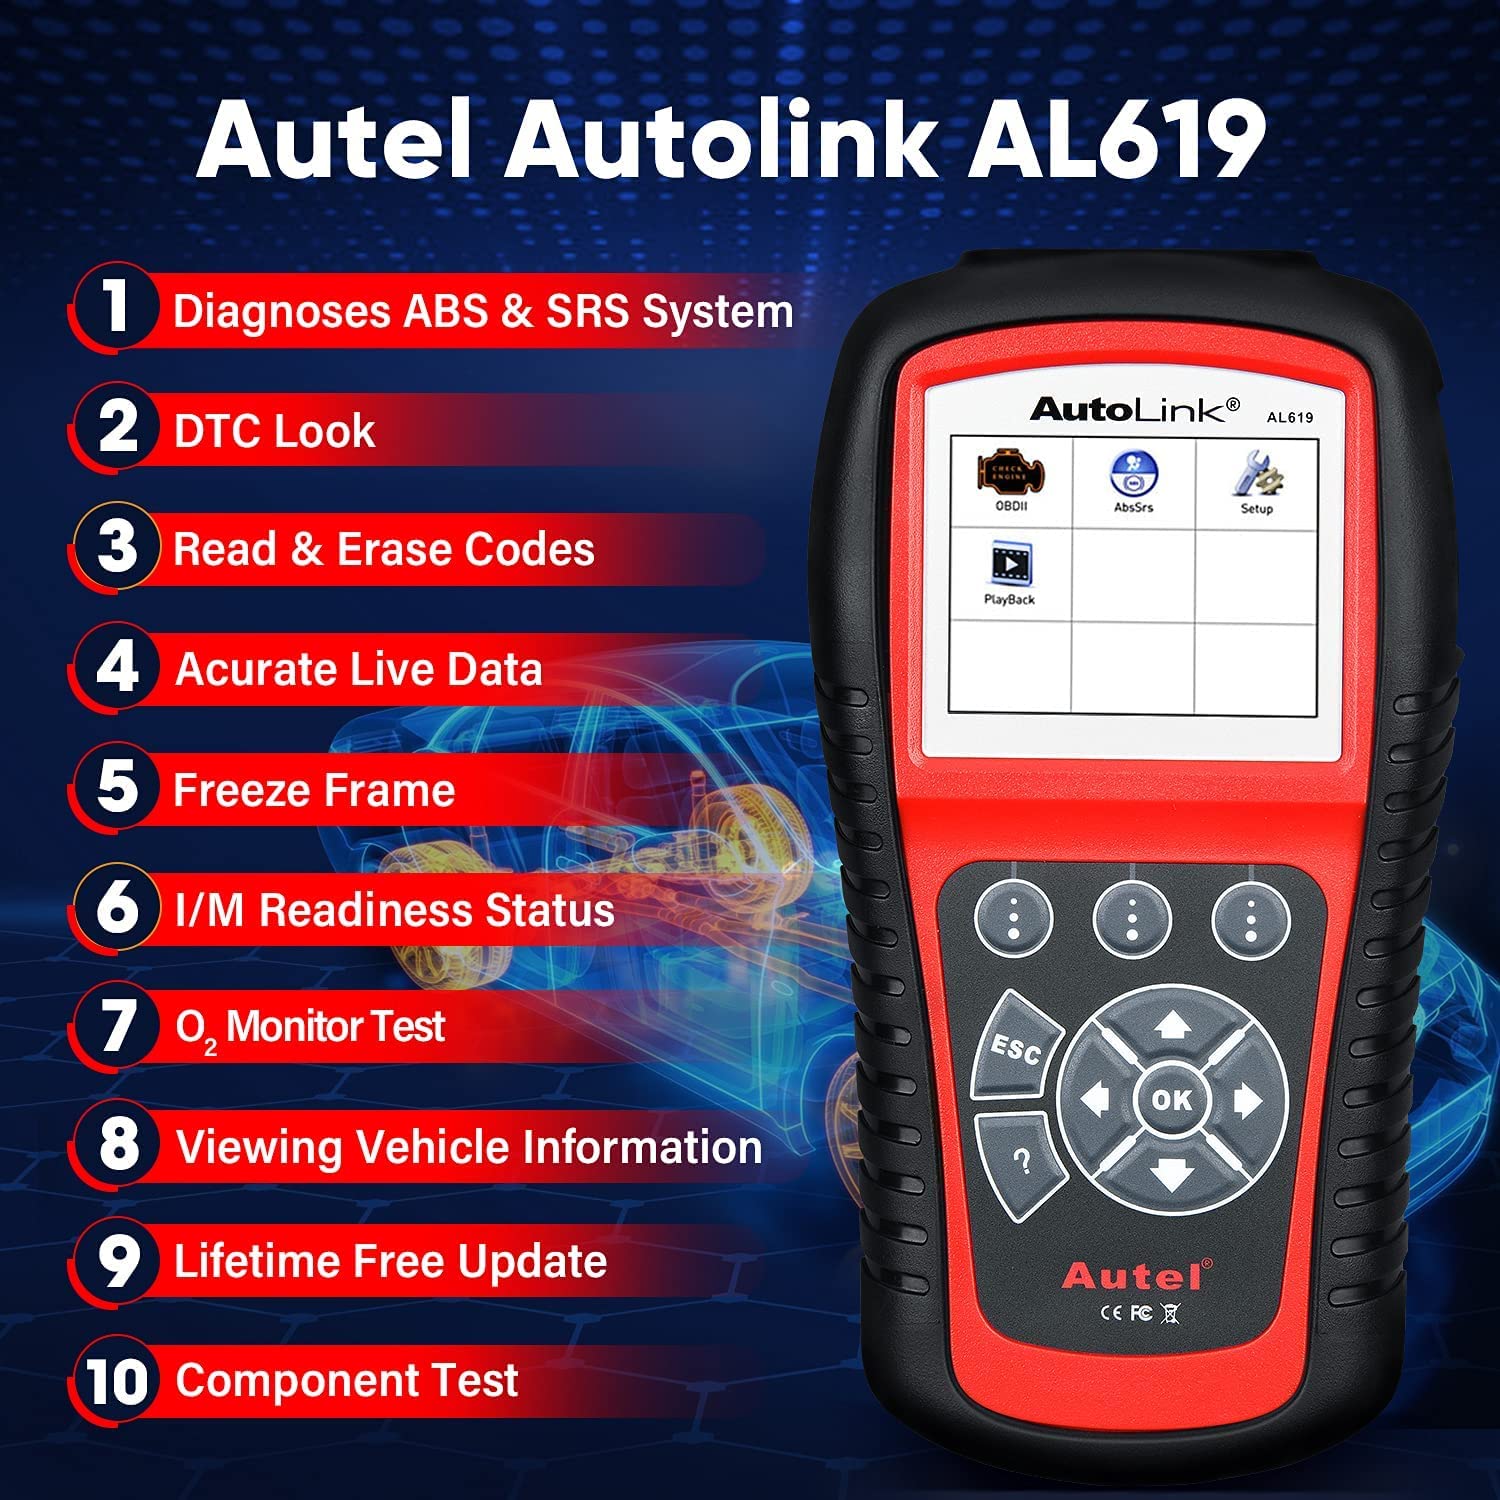 Autel AutoLink AL619 features